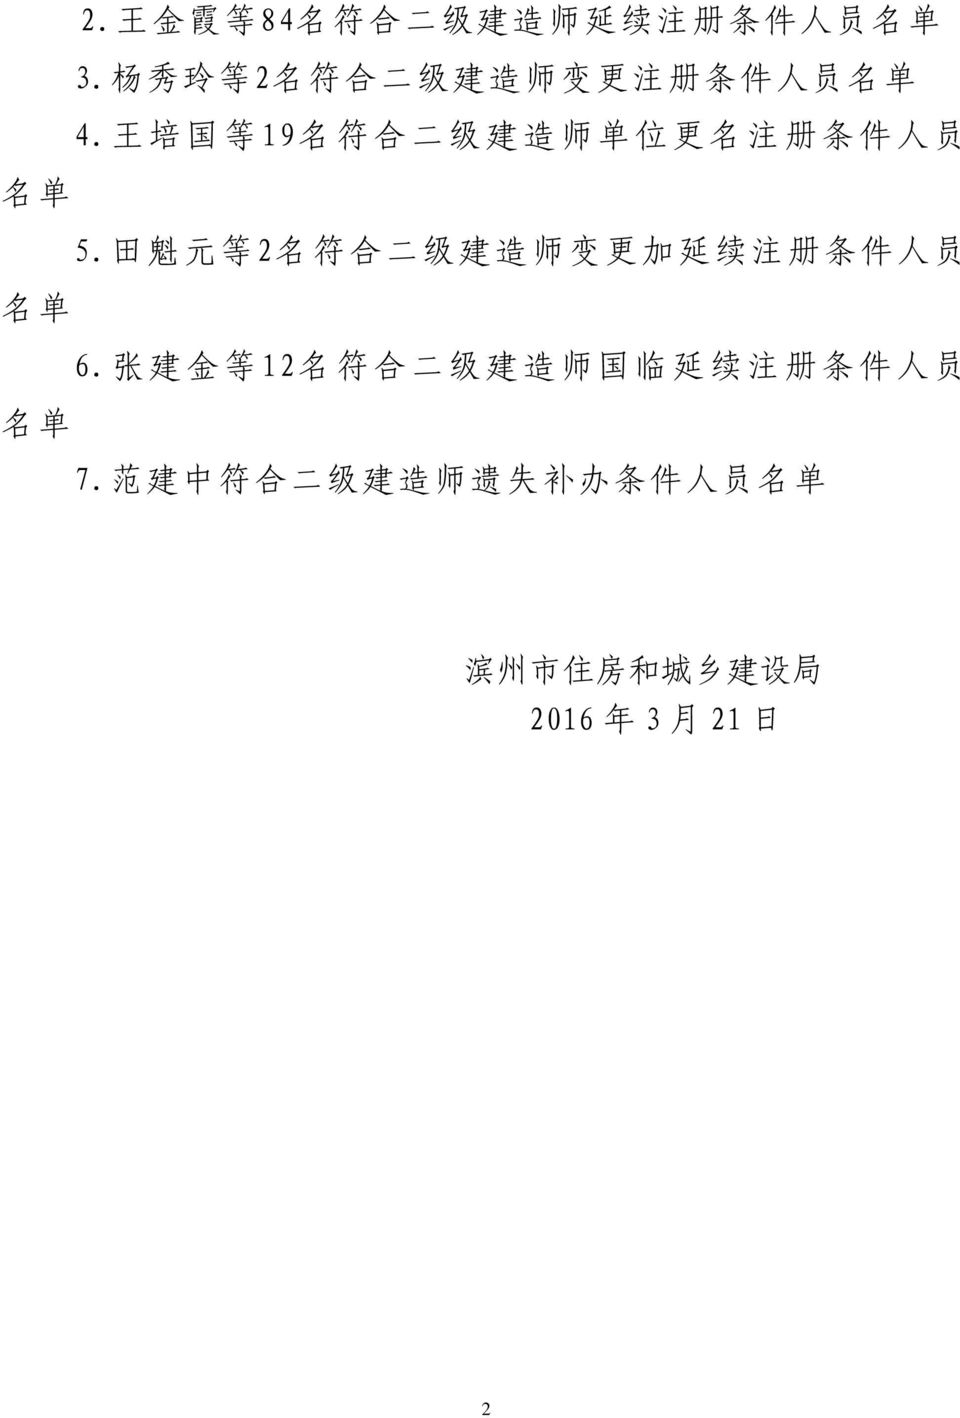 王 培 国 等 19 名 符 合 二 级 建 造 师 单 位 更 名 注 册 条 件 人 员 名 单 5.